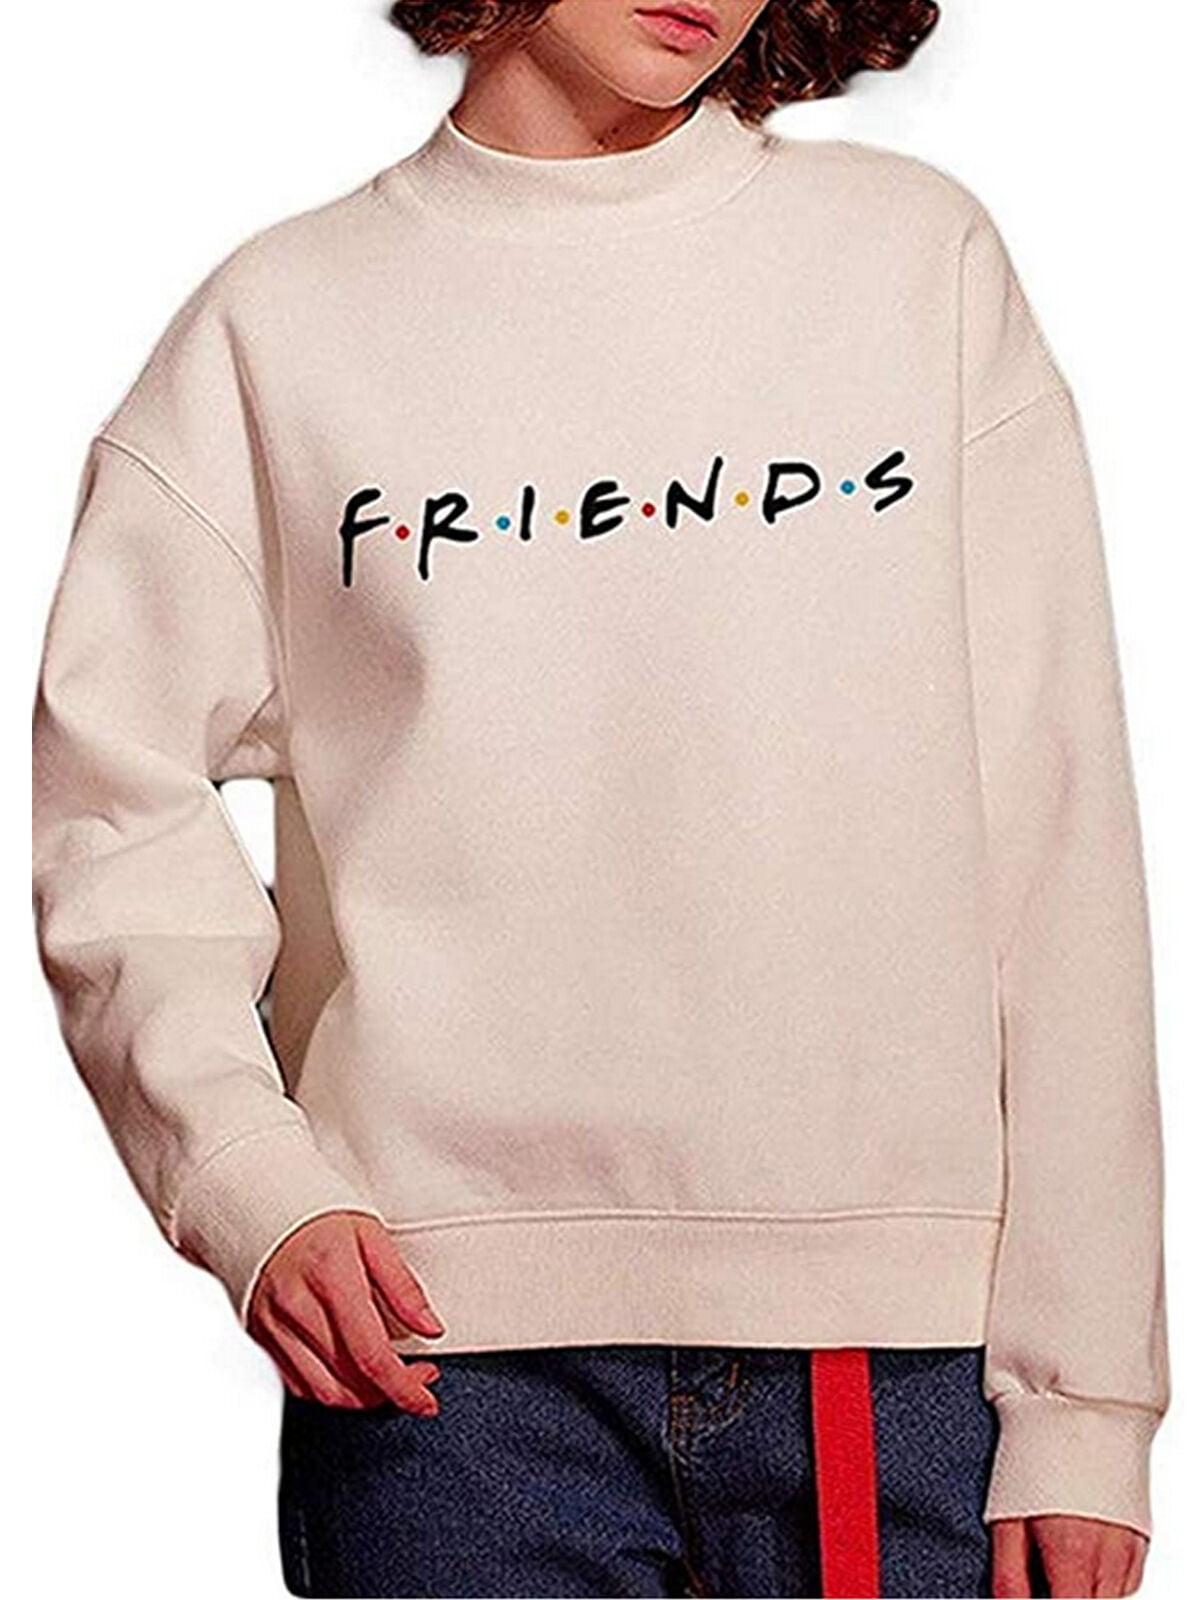 Unisex Women FRIENDS Print Hoodie Jumper Hooded Jacket Sweatershirt Pullover